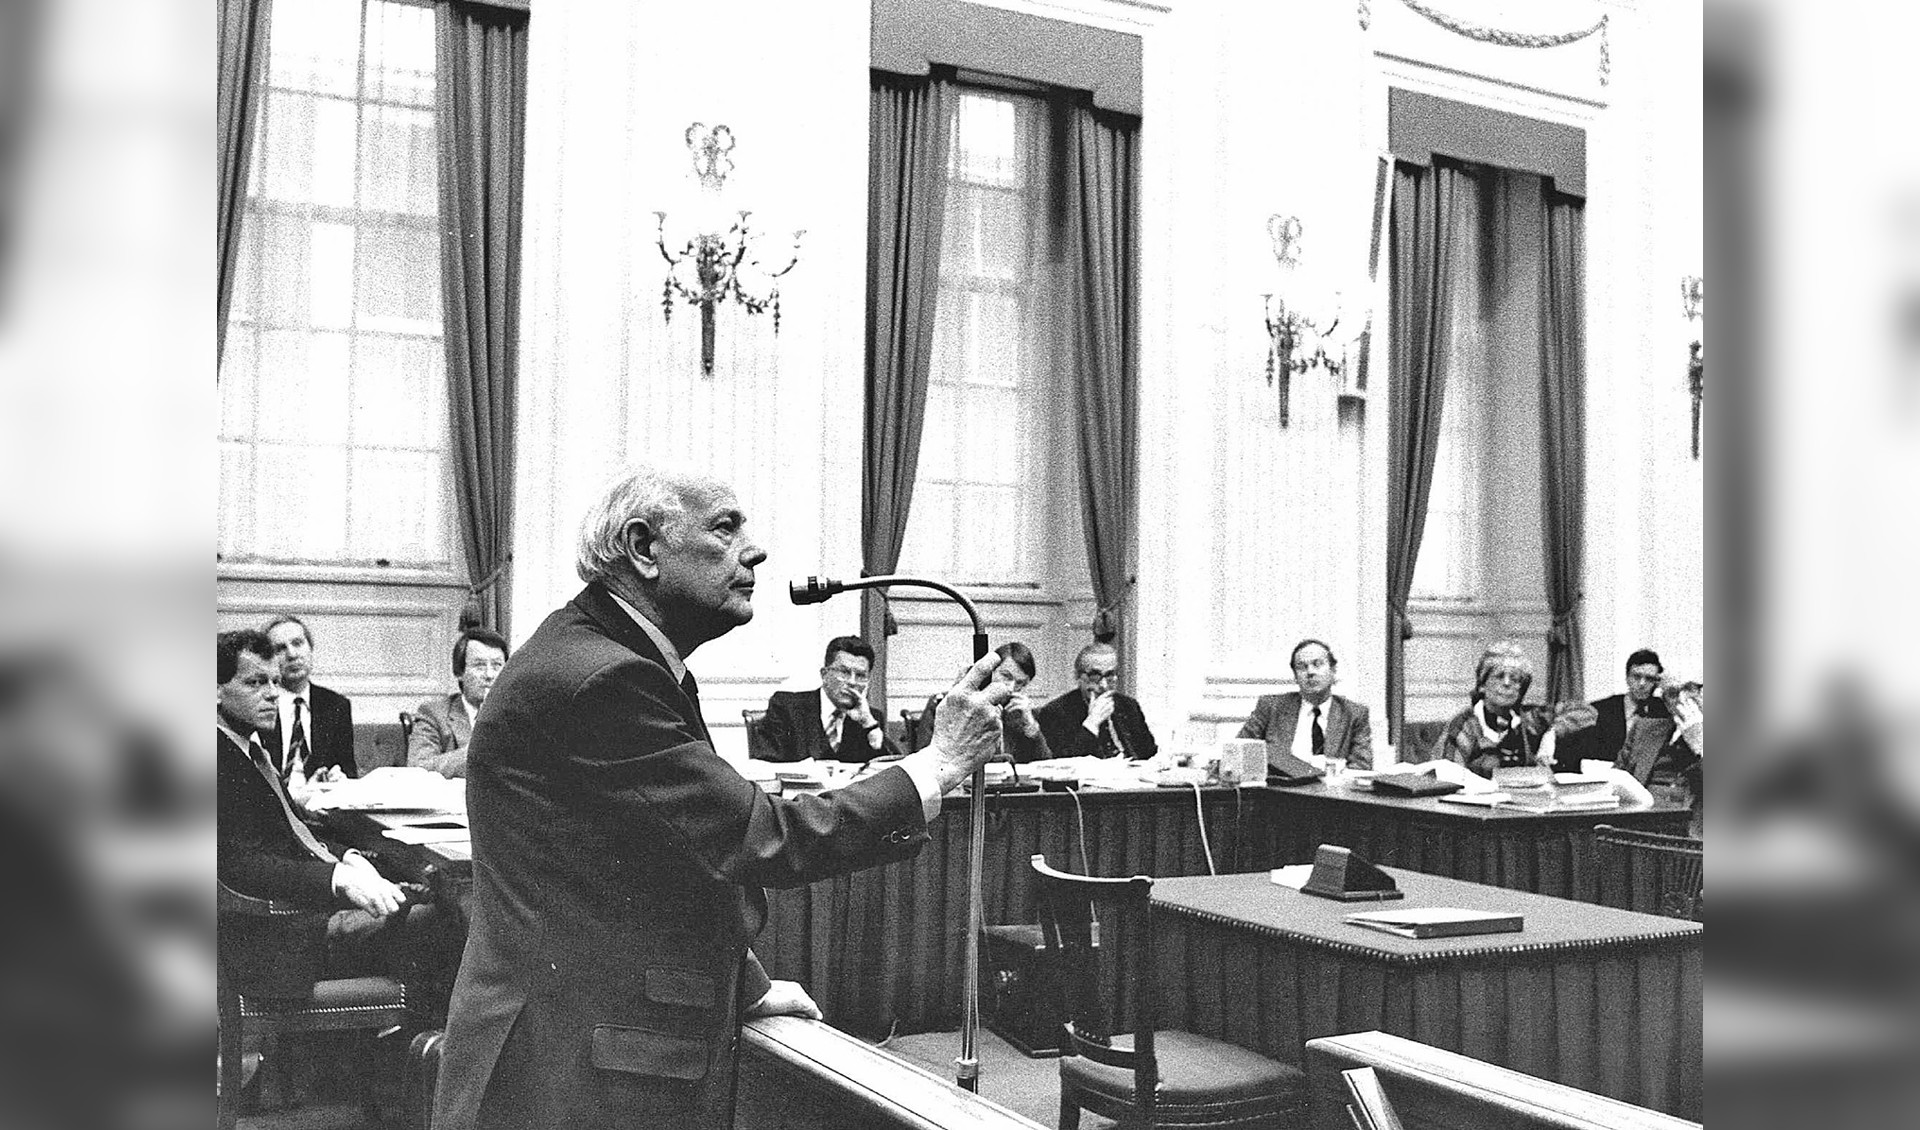 Joop den Uyl is twintig jaar partijleider van de PvdA geweest. Hij trad in die rol aan een jaar na de voor de sociaaldemocraten desastreus verlopen raadsverkiezingen in 1966.